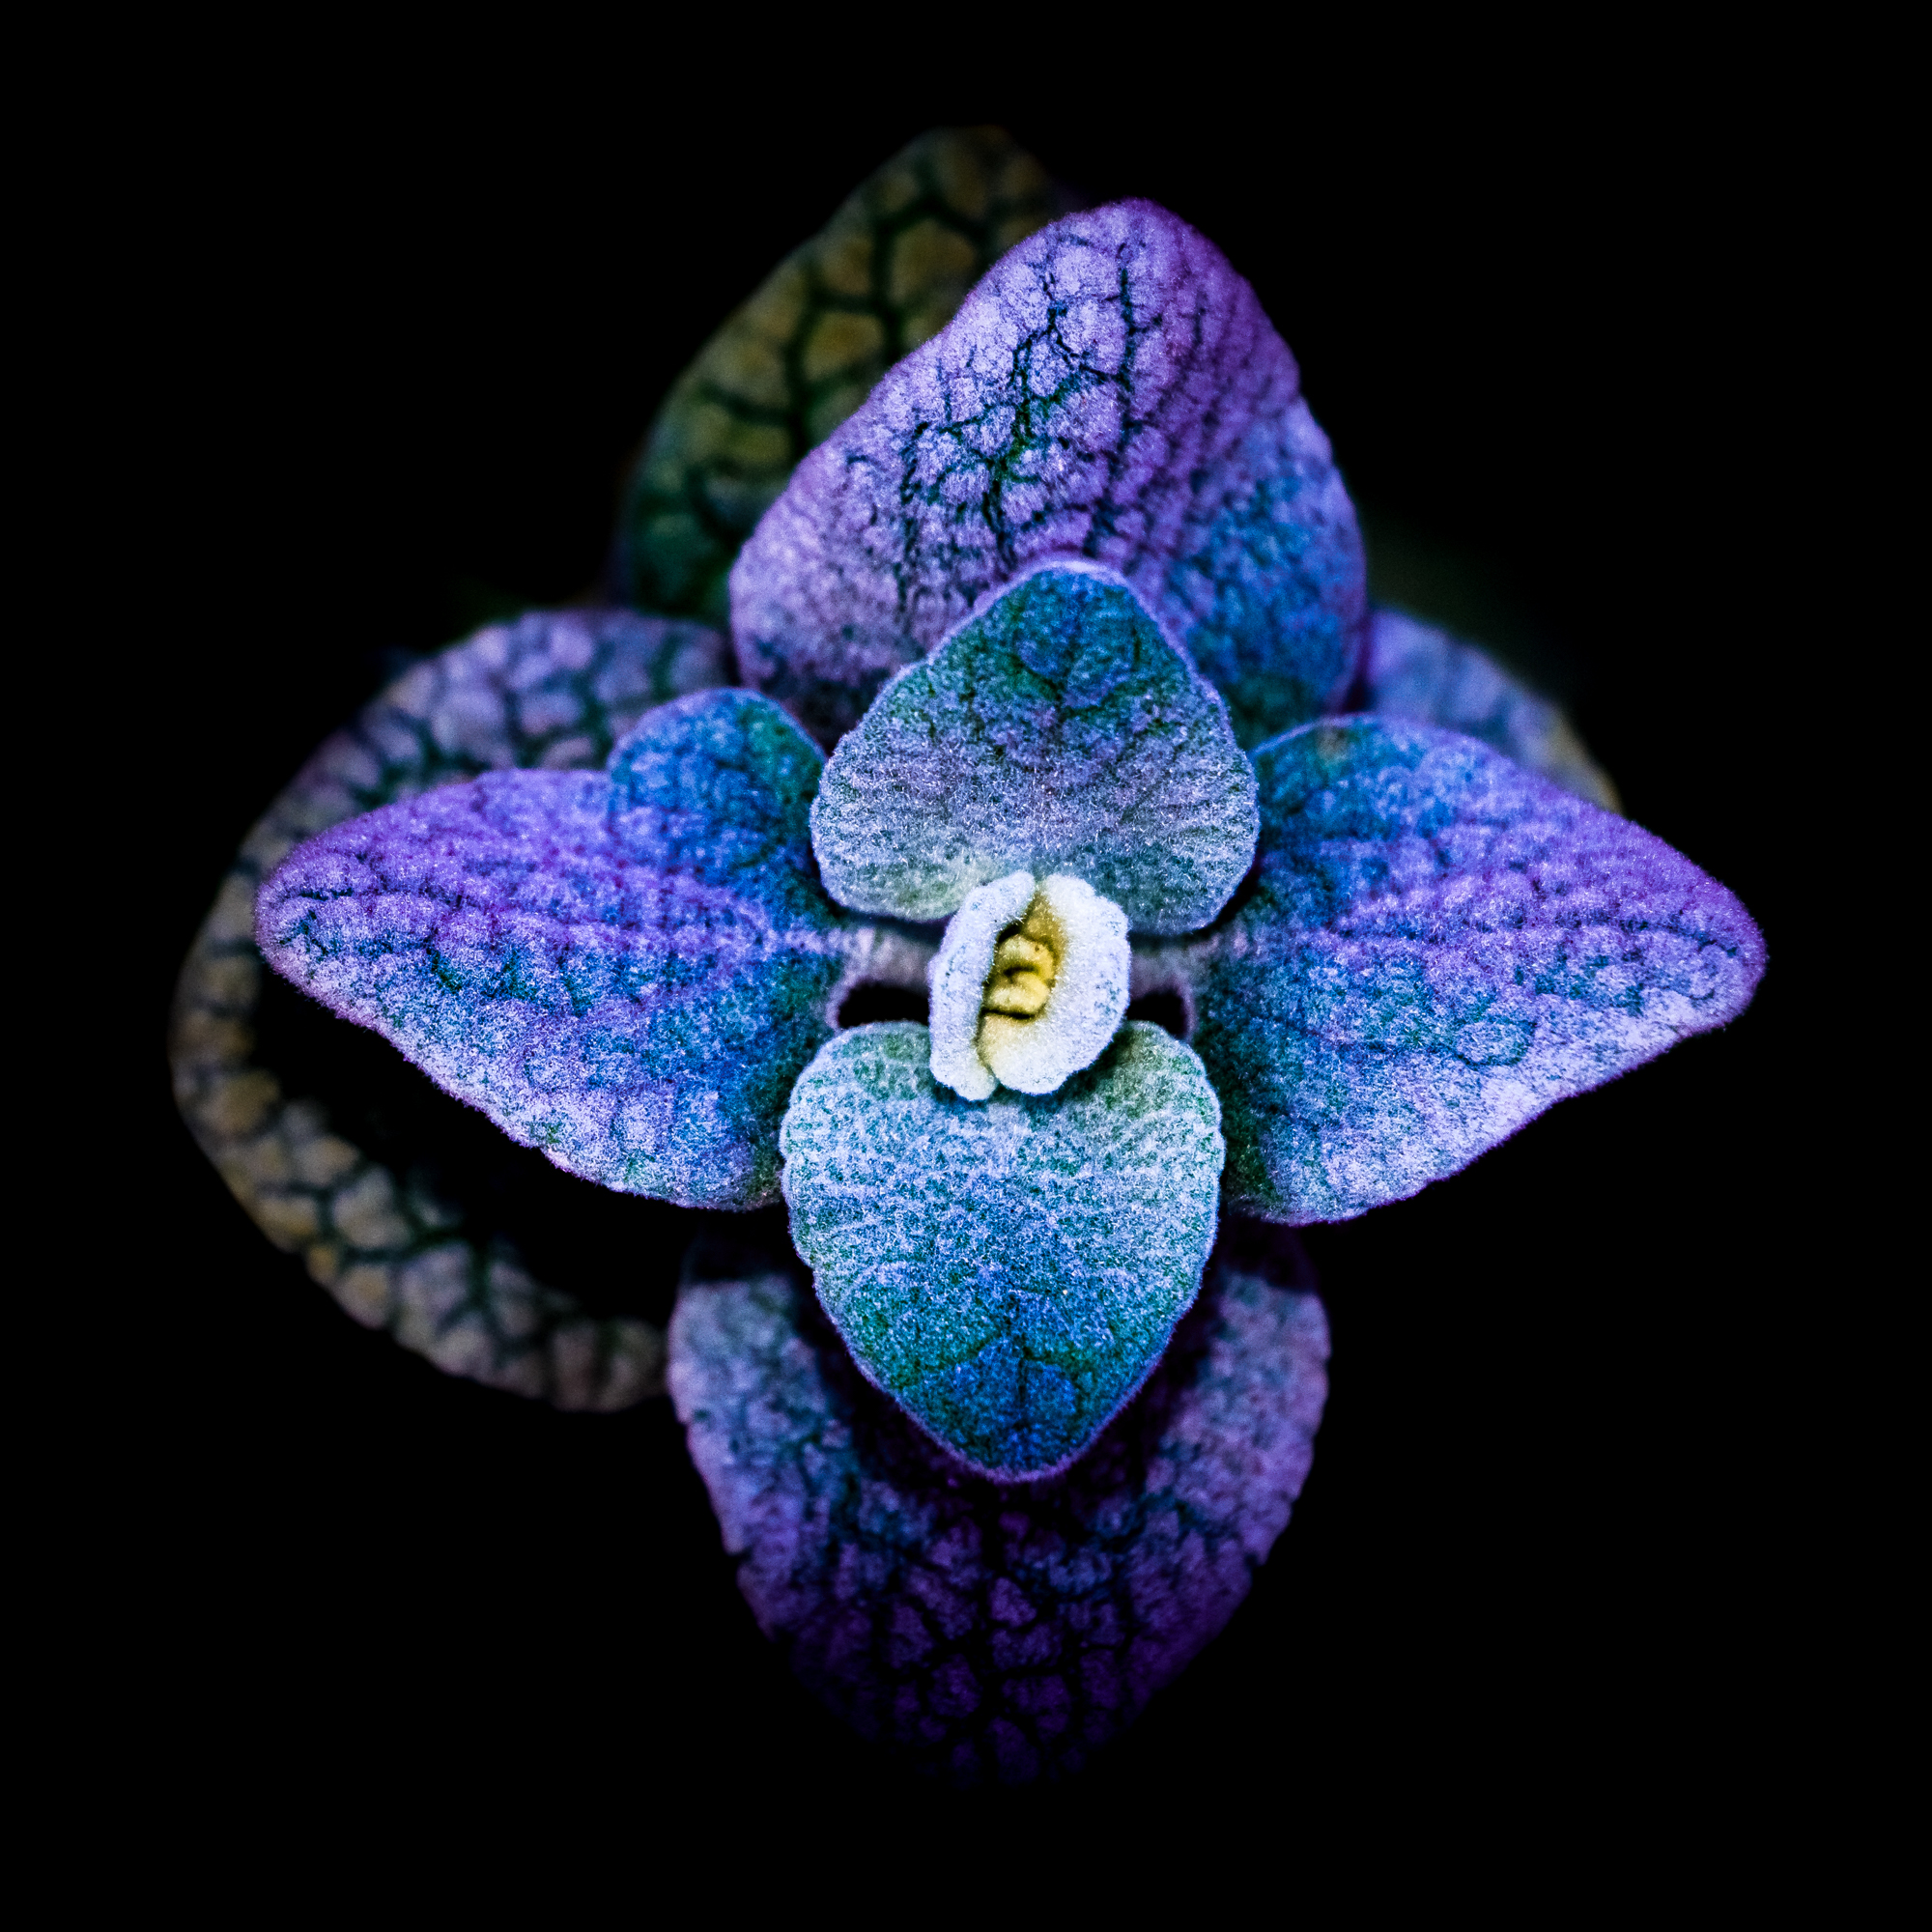 photographie arrogance chromatique numerique nature ve al fleur plante large open